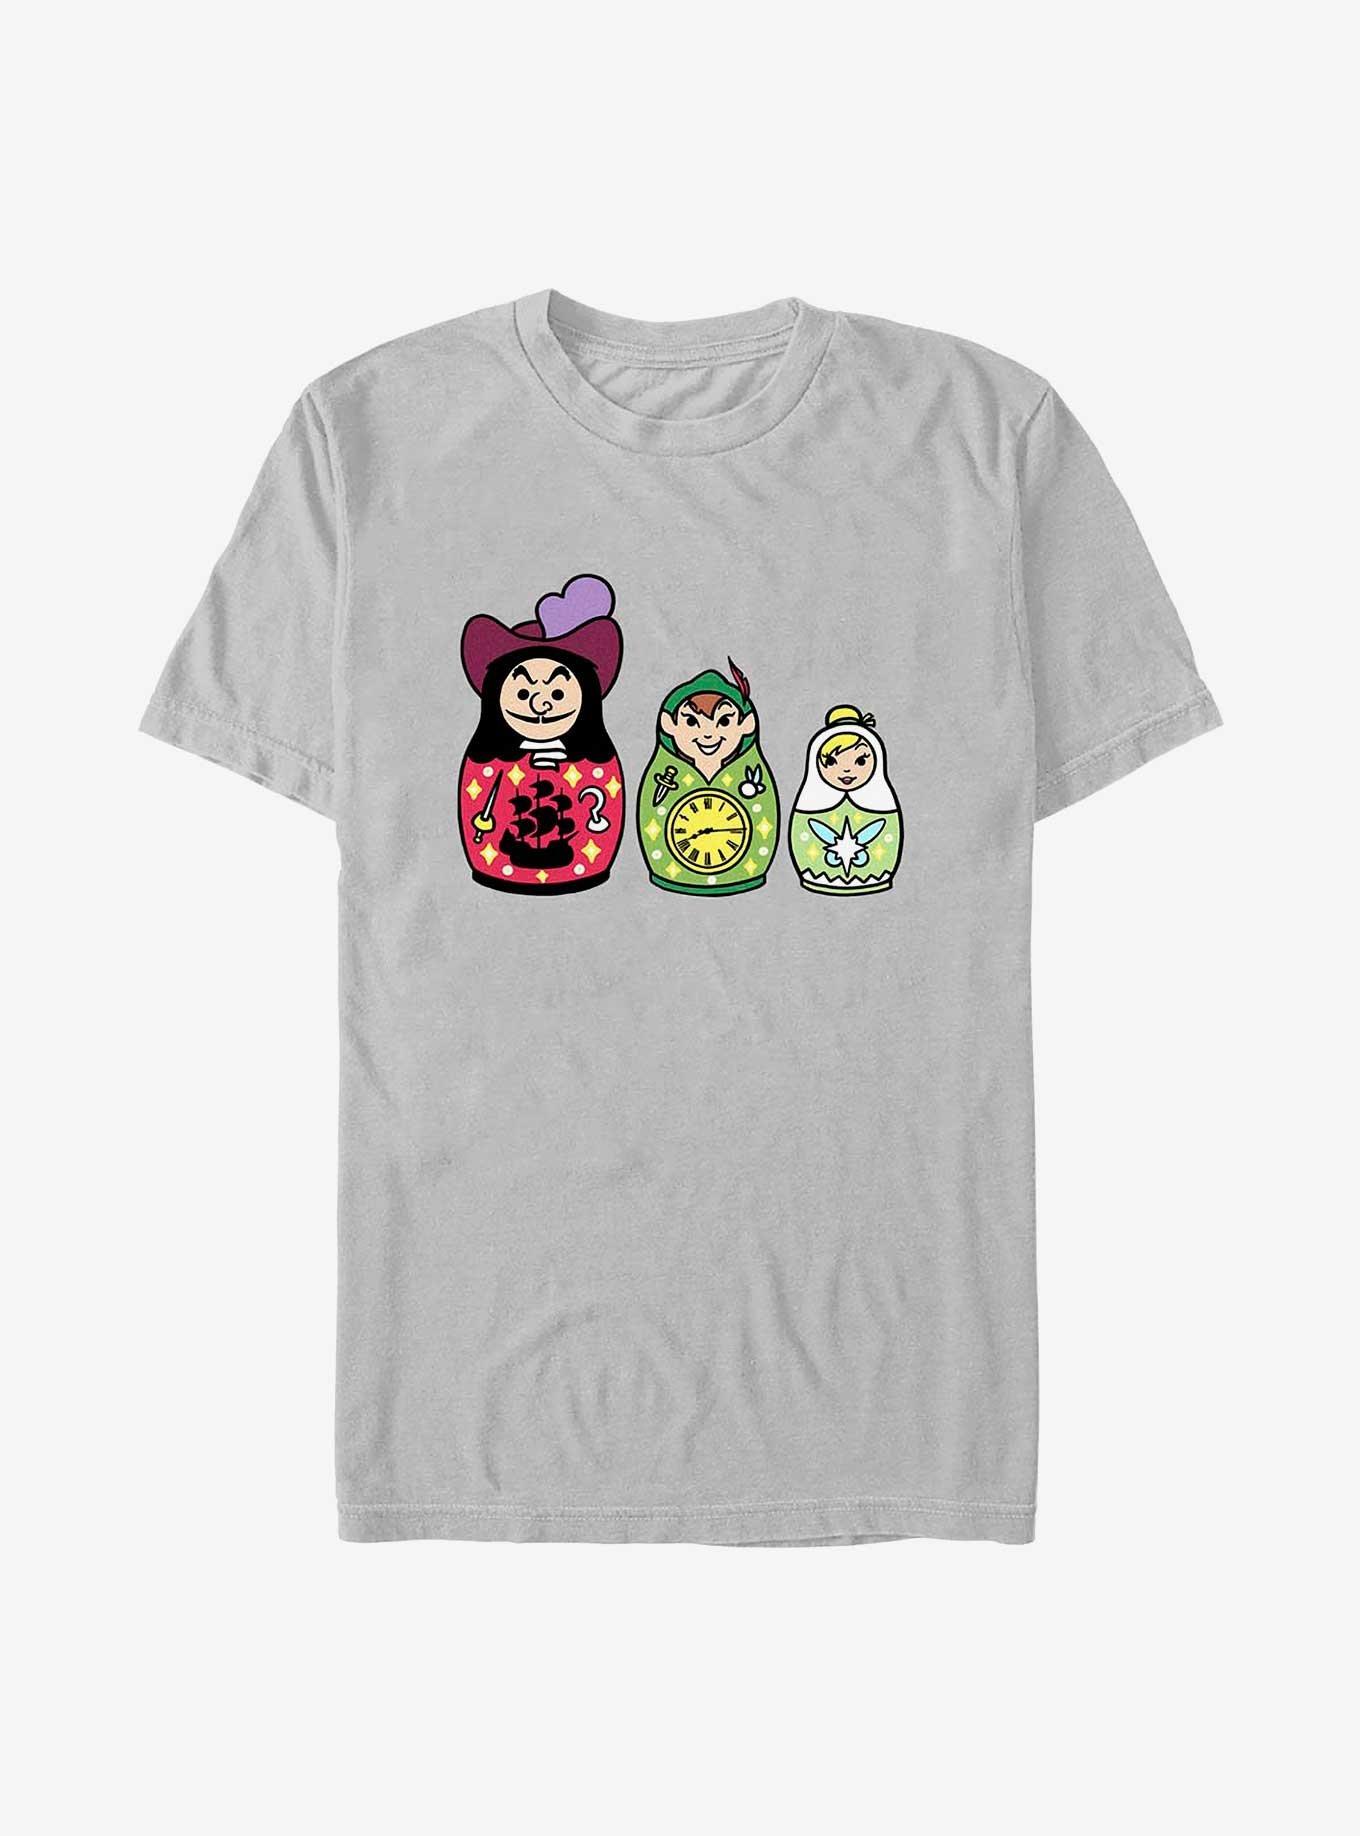 Hot Topic Disney Peter Pan Matryoshka Dolls Captain Hook, Pan, and Tinker  Bell T-Shirt